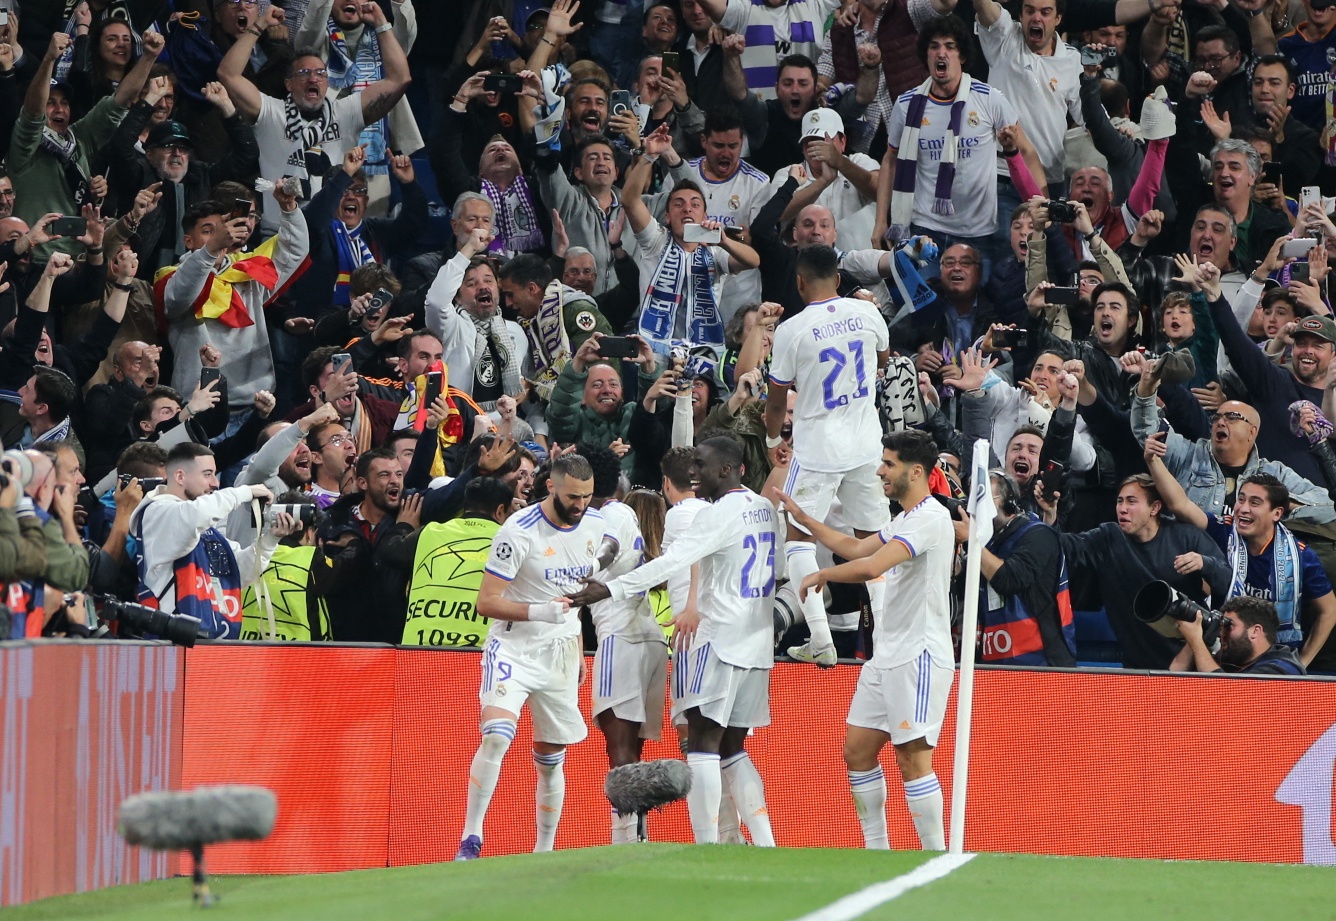 El Real Madrid jugará la final ante el Liverpool y buscará su 14° Champions League (REUTERS/Isabel Infantes)